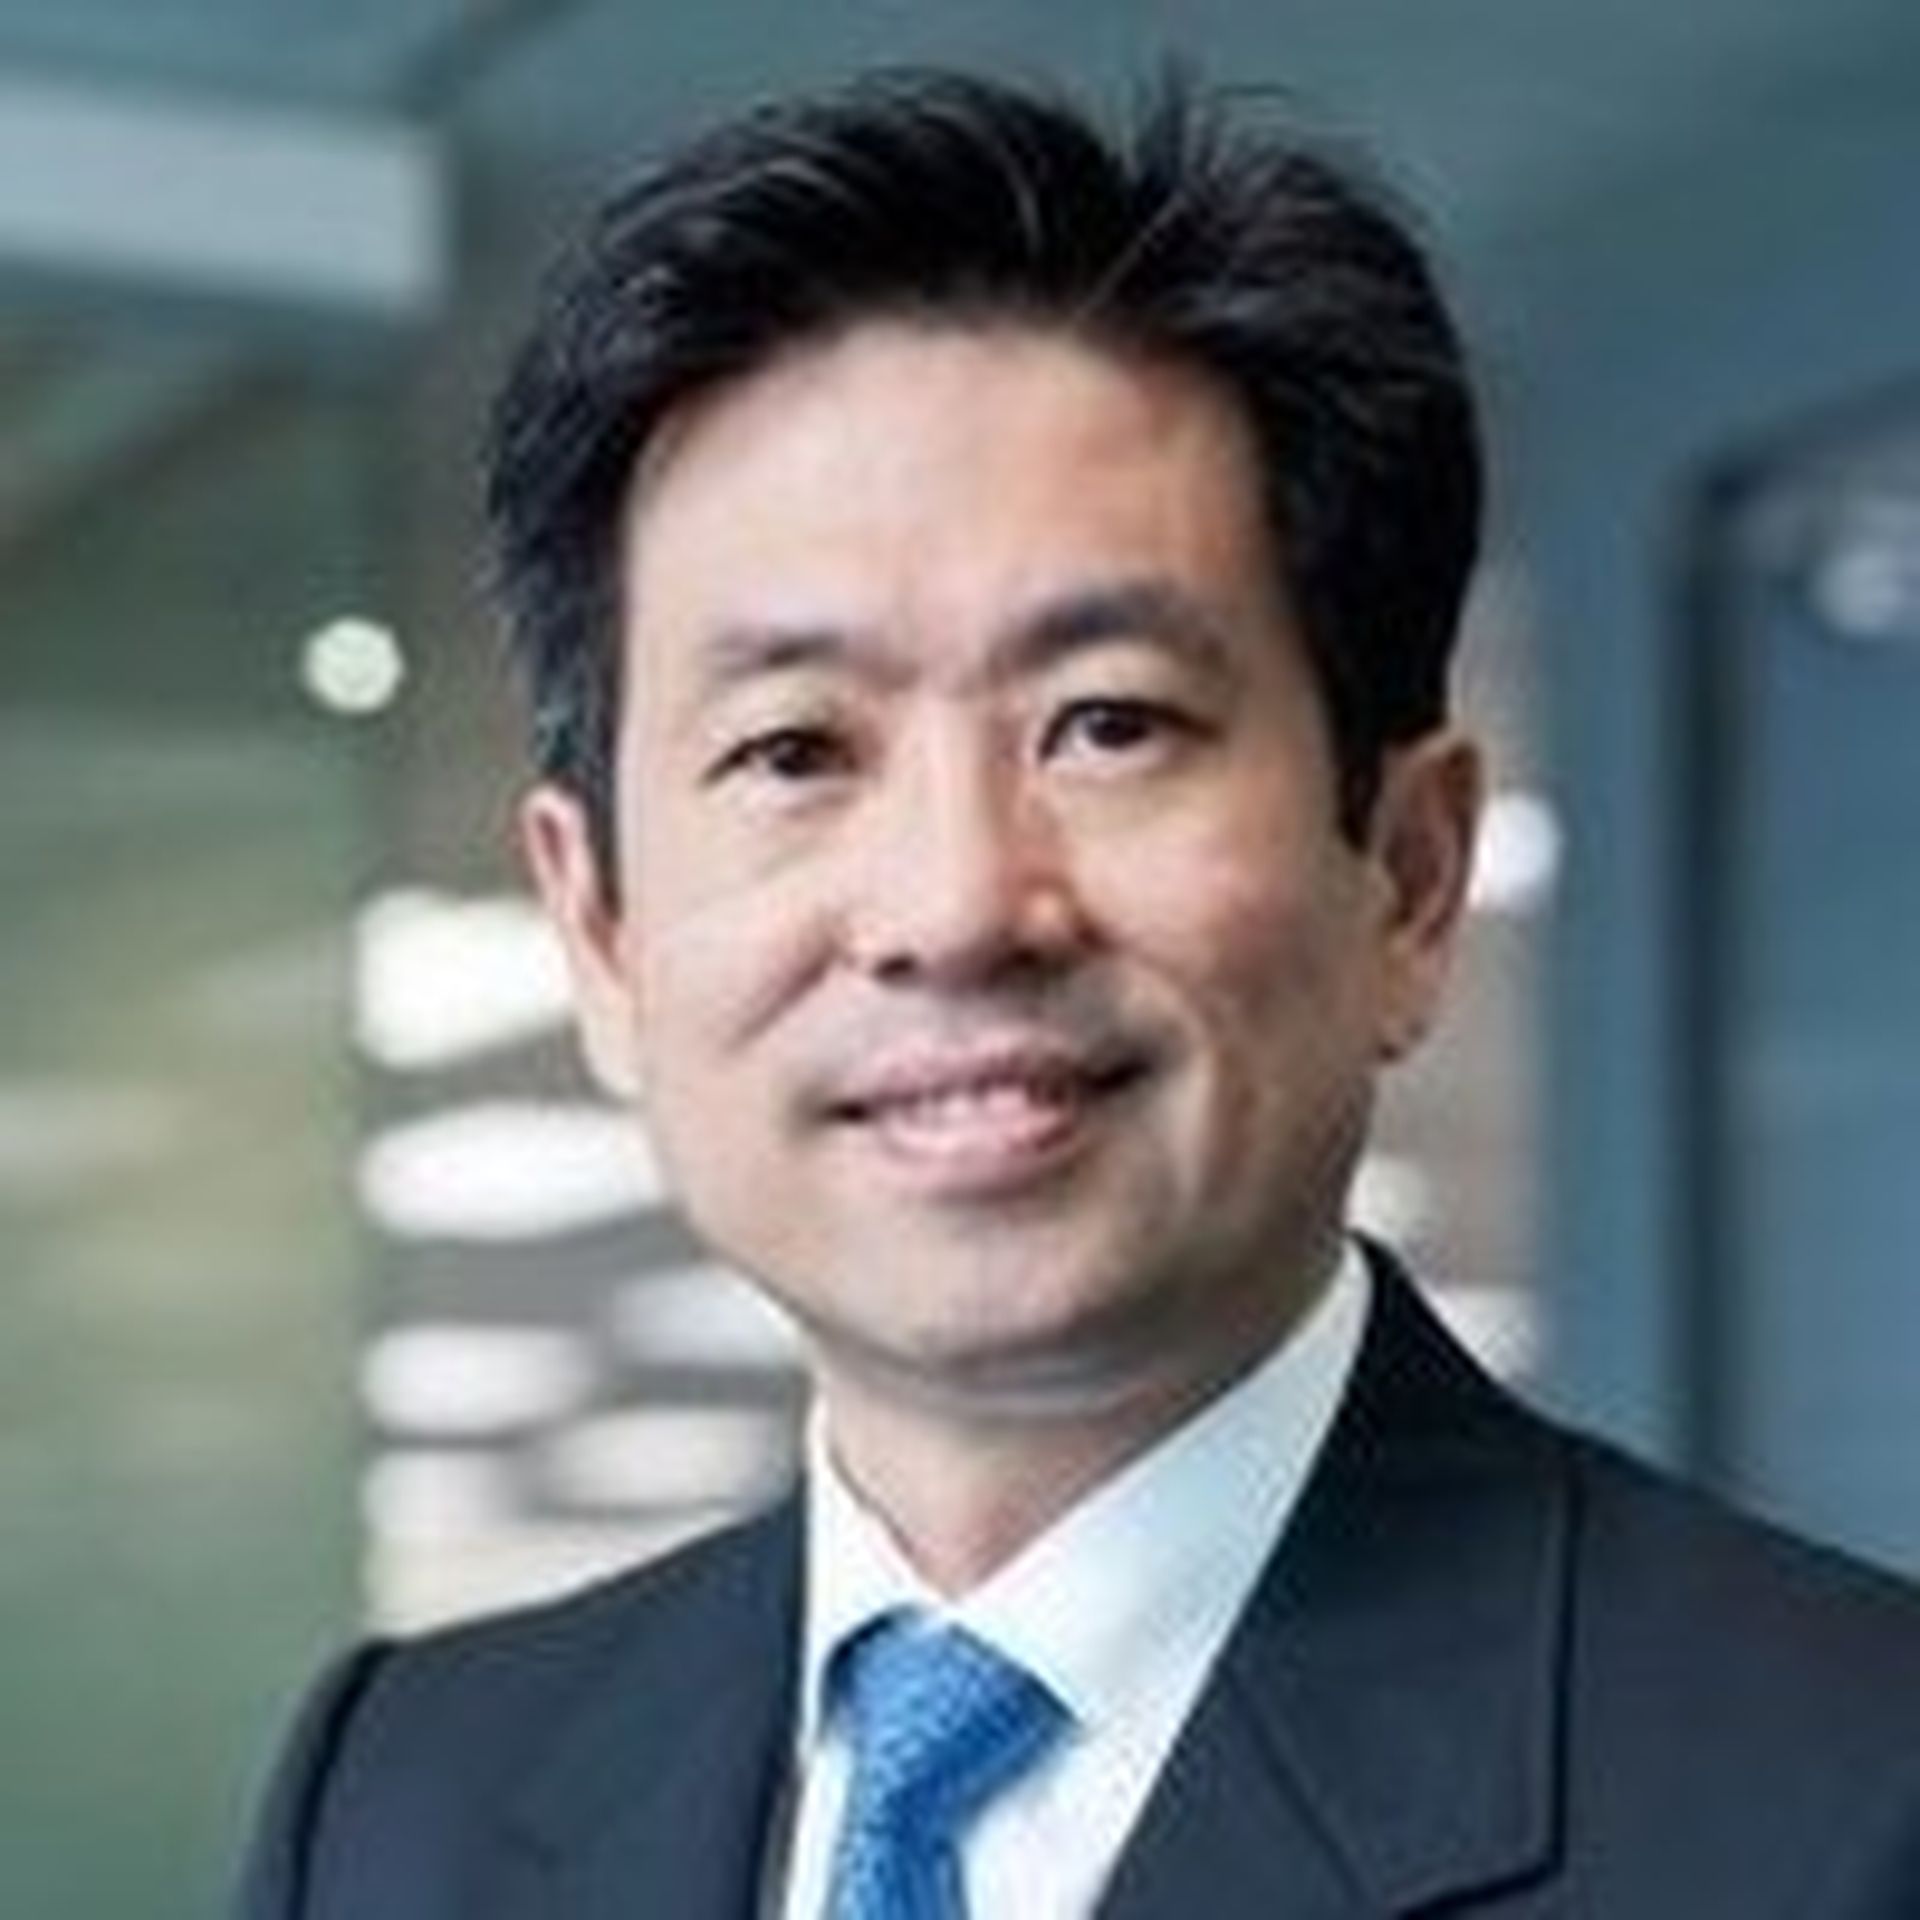 Philip Yuen, CEO, Deloitte Southeast Asia